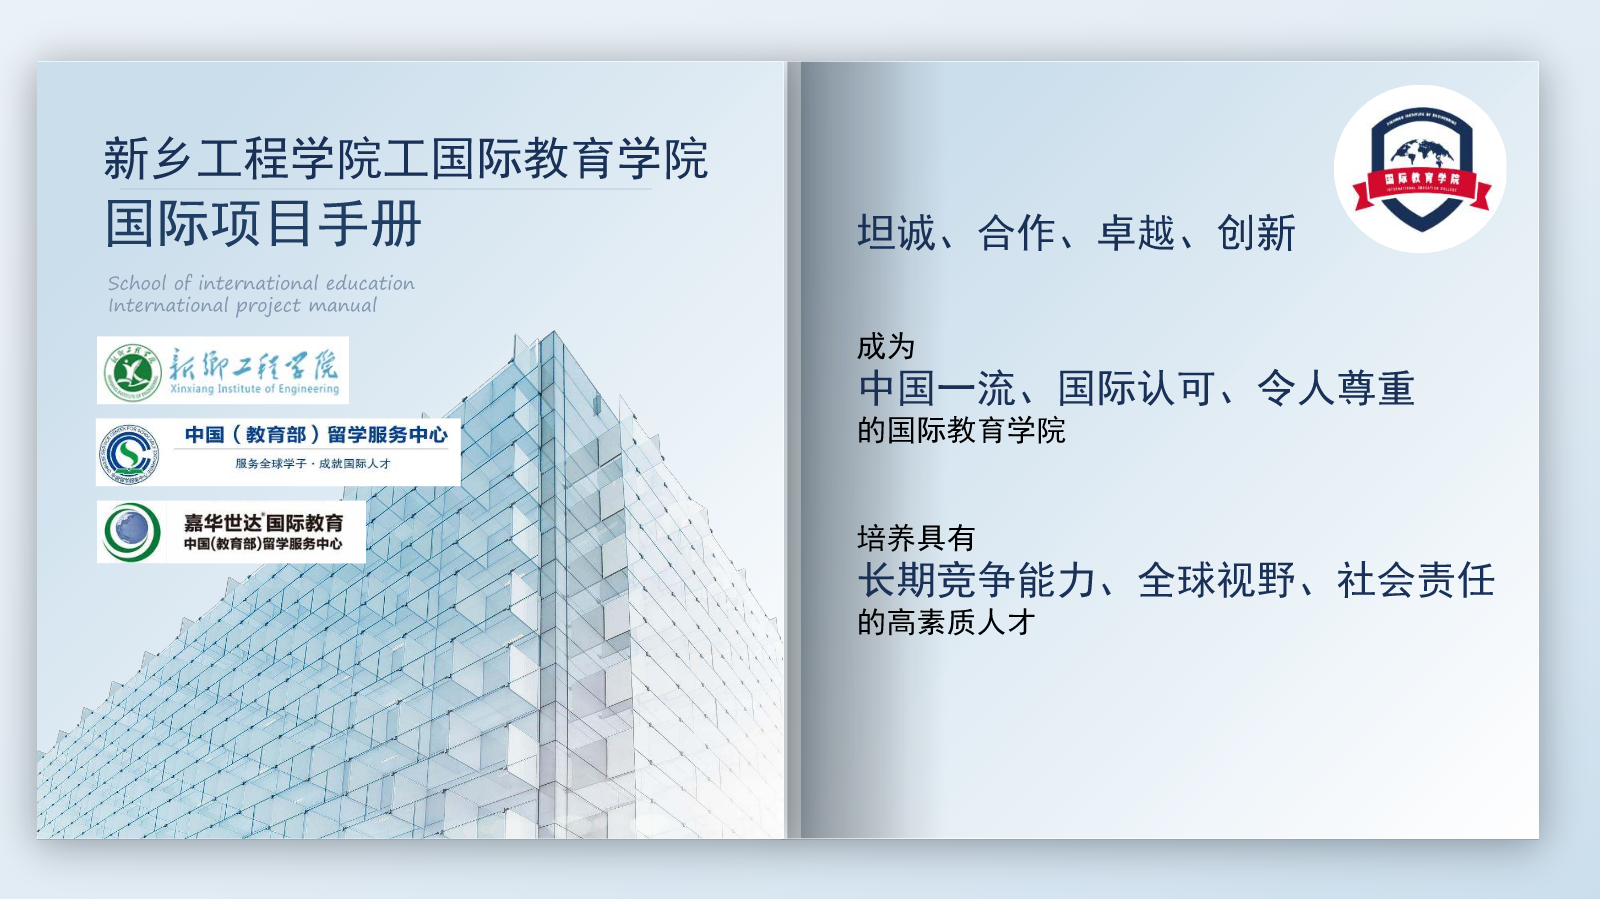 新乡工程学院国际教育学院国际项目电子手册